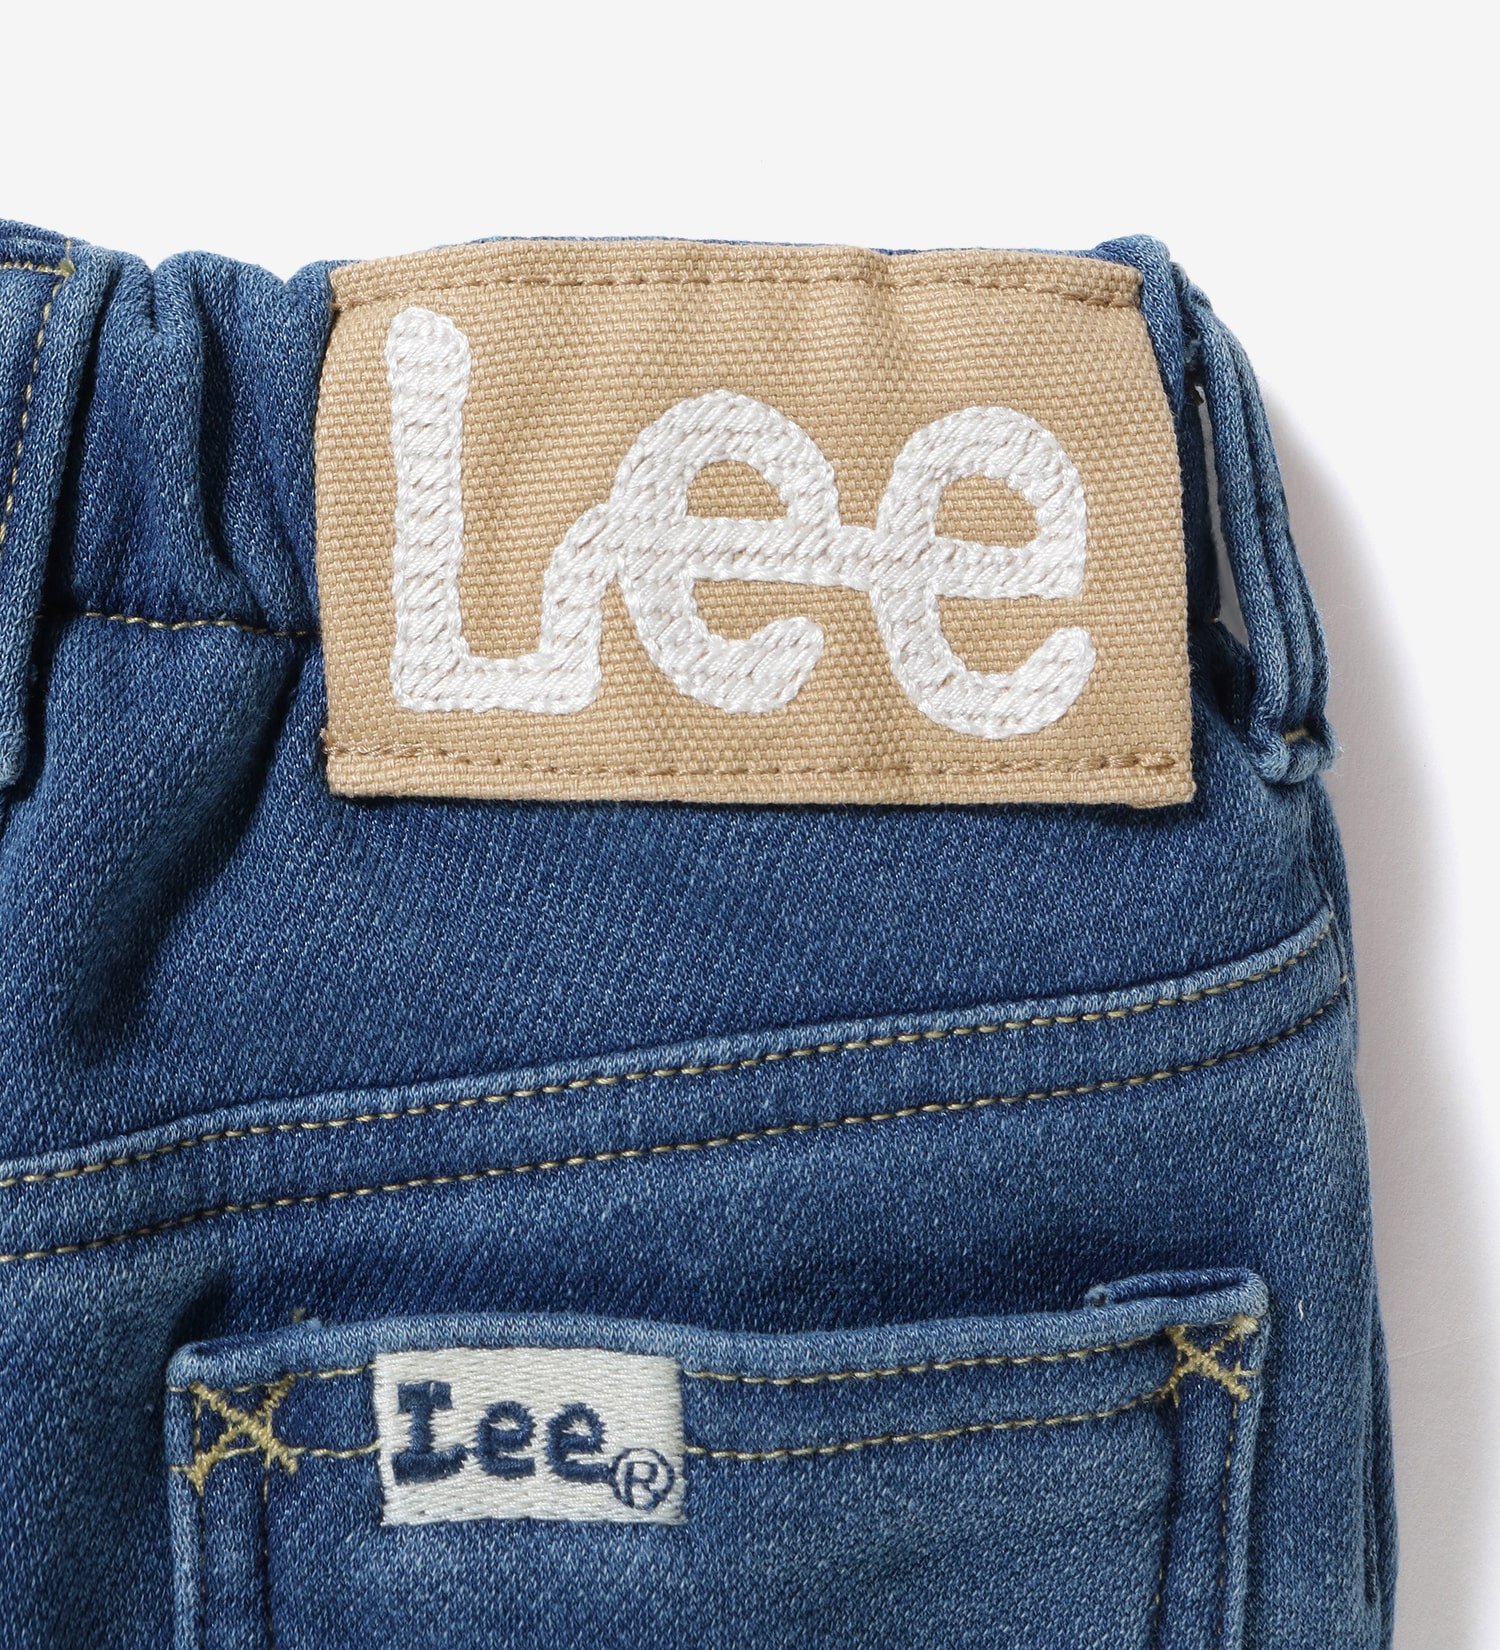 Lee(リー)の【80-100cm】ベビー BUDDY LEE ストレート ウォーム|パンツ/デニムパンツ/キッズ|中色ブルー